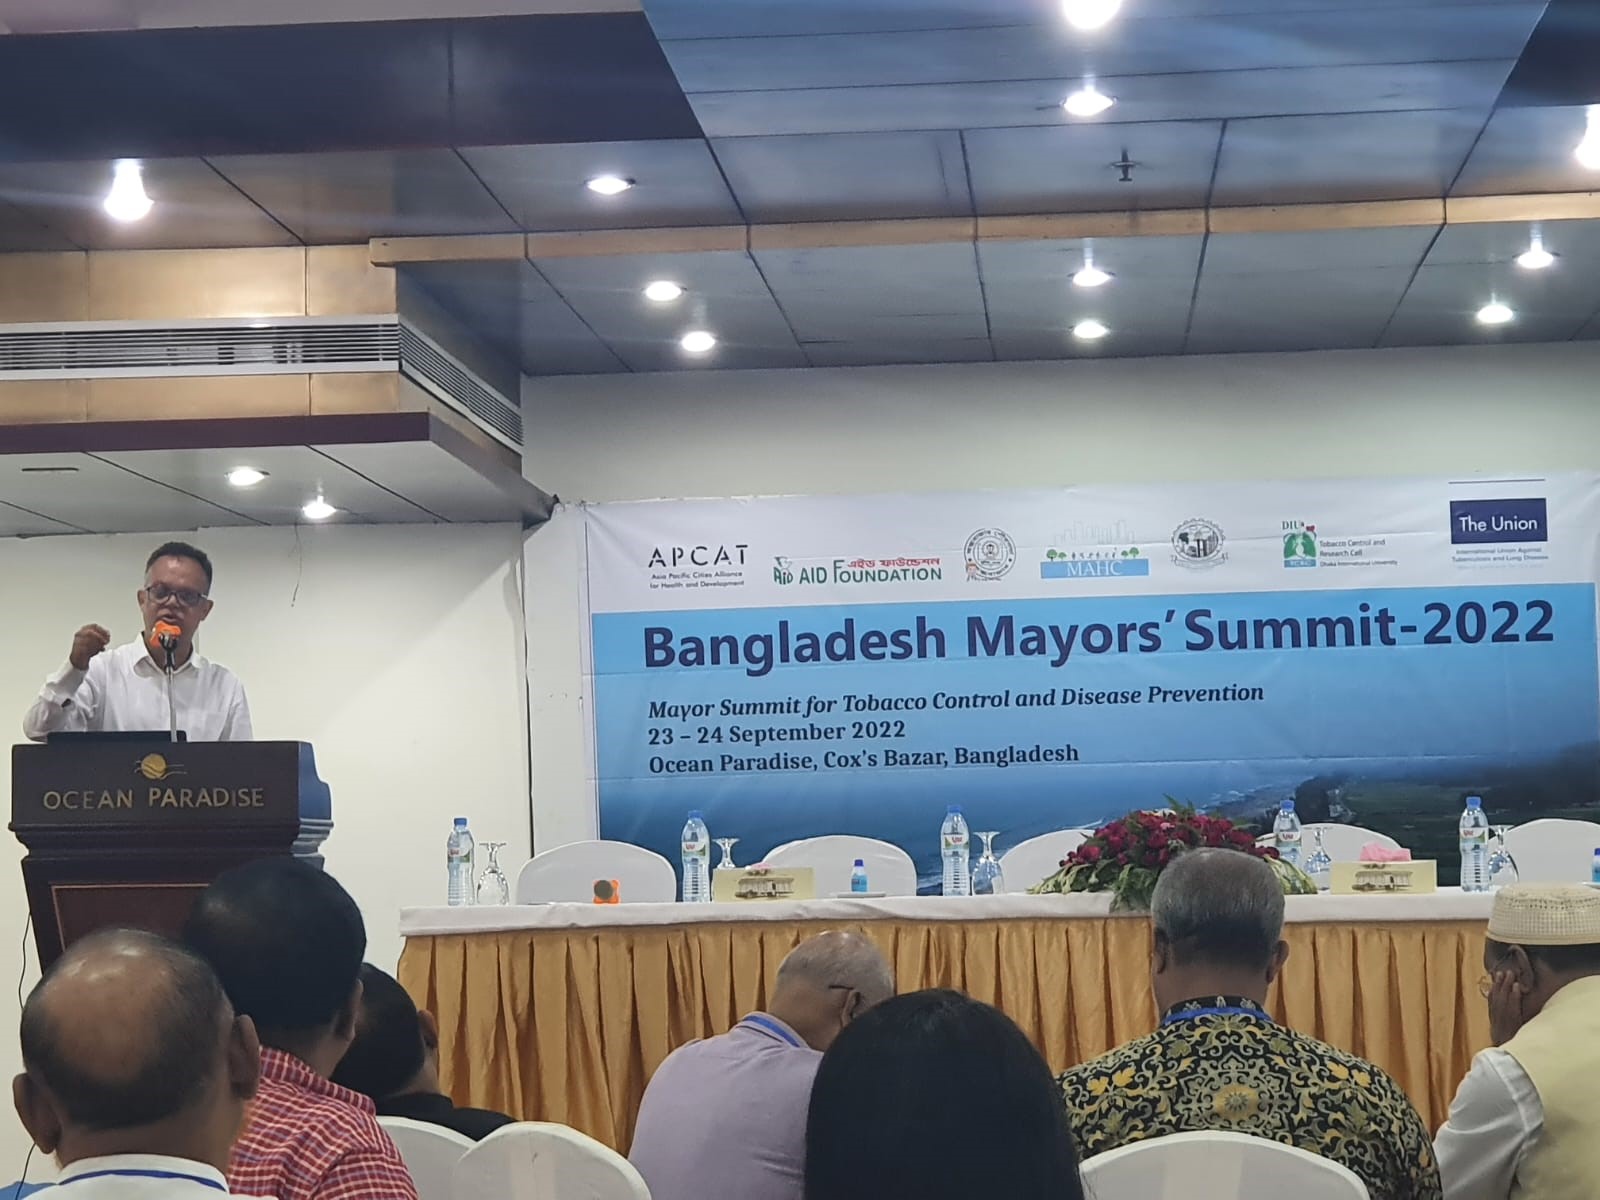 Presenter at the Bangladesh Mayors Summit 2022